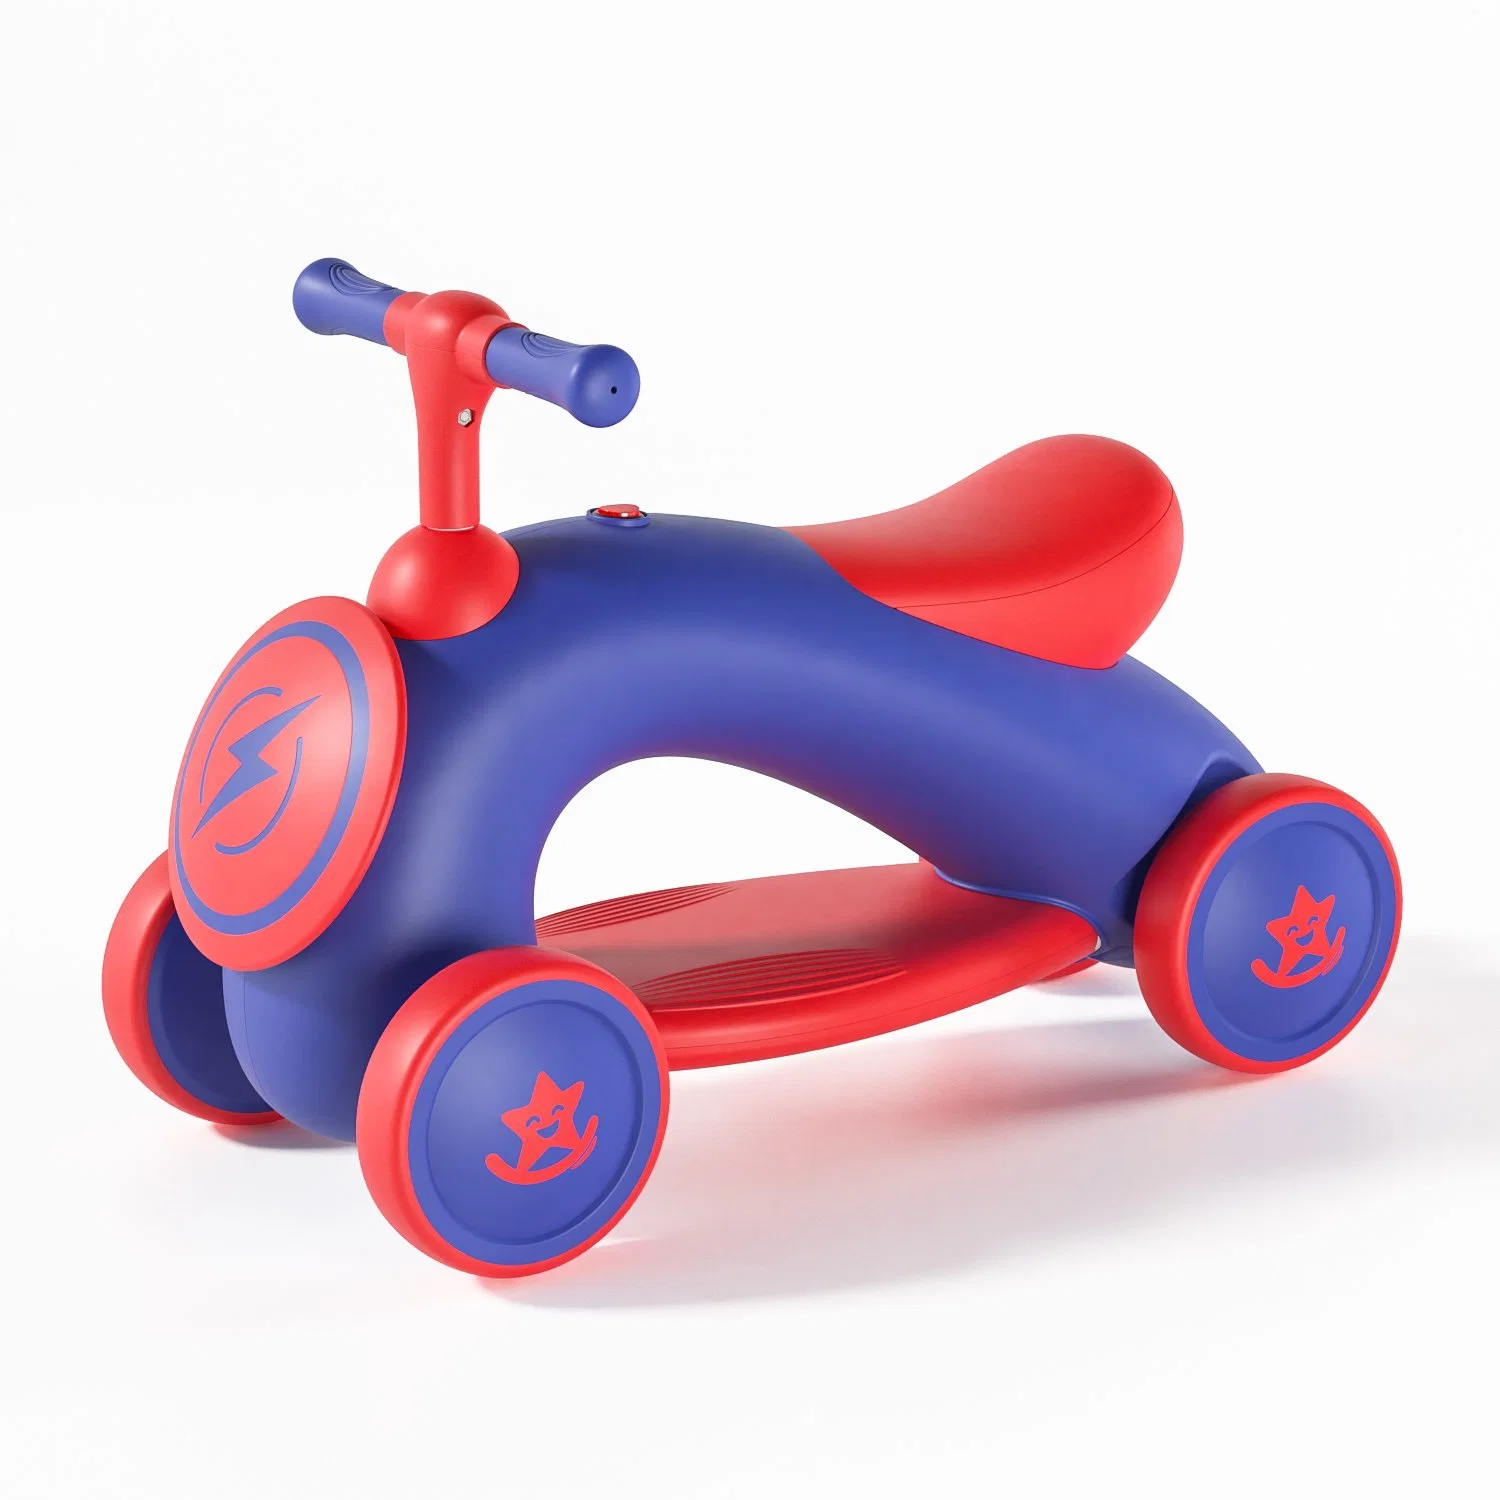 Fábrica Nuevo estilo 4 rueda niños equilibrio bicicleta niños Paseo En el coche de paseo del bebé del triciclo del juguete